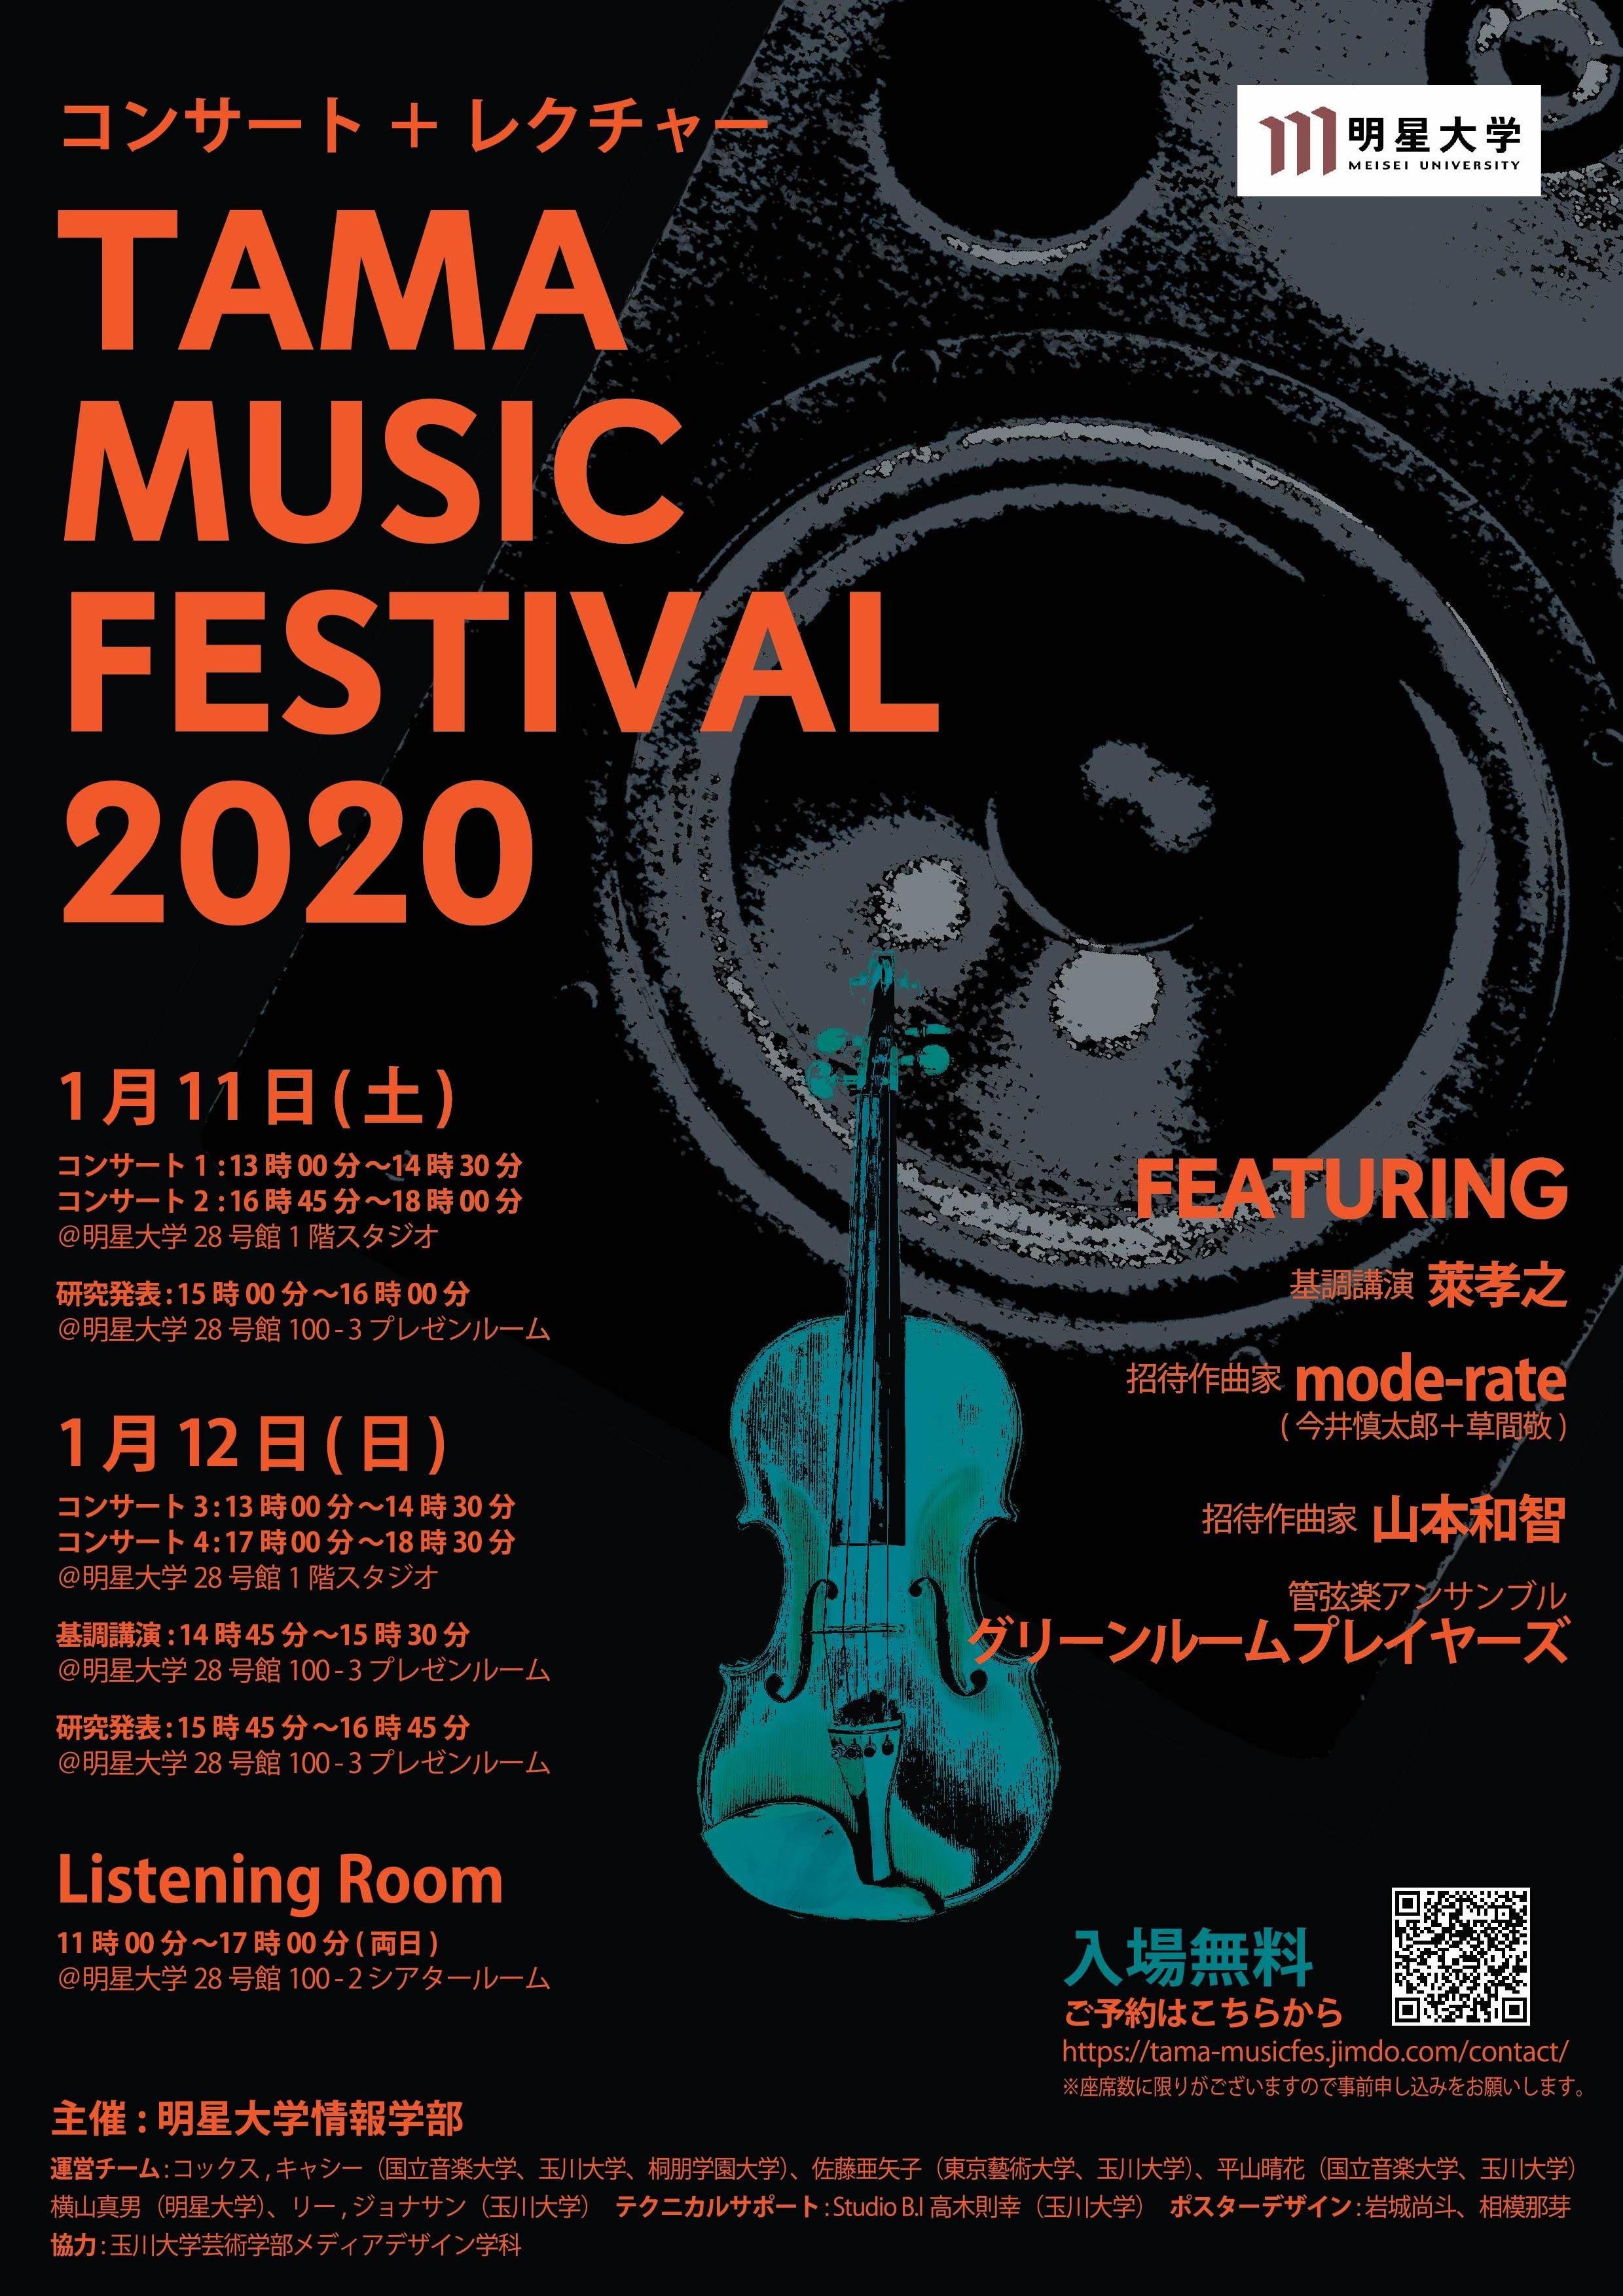 情報科学と音楽の融合 -- 明星大学情報学研究科が「TAMA Music Festival 2020」を開催 --